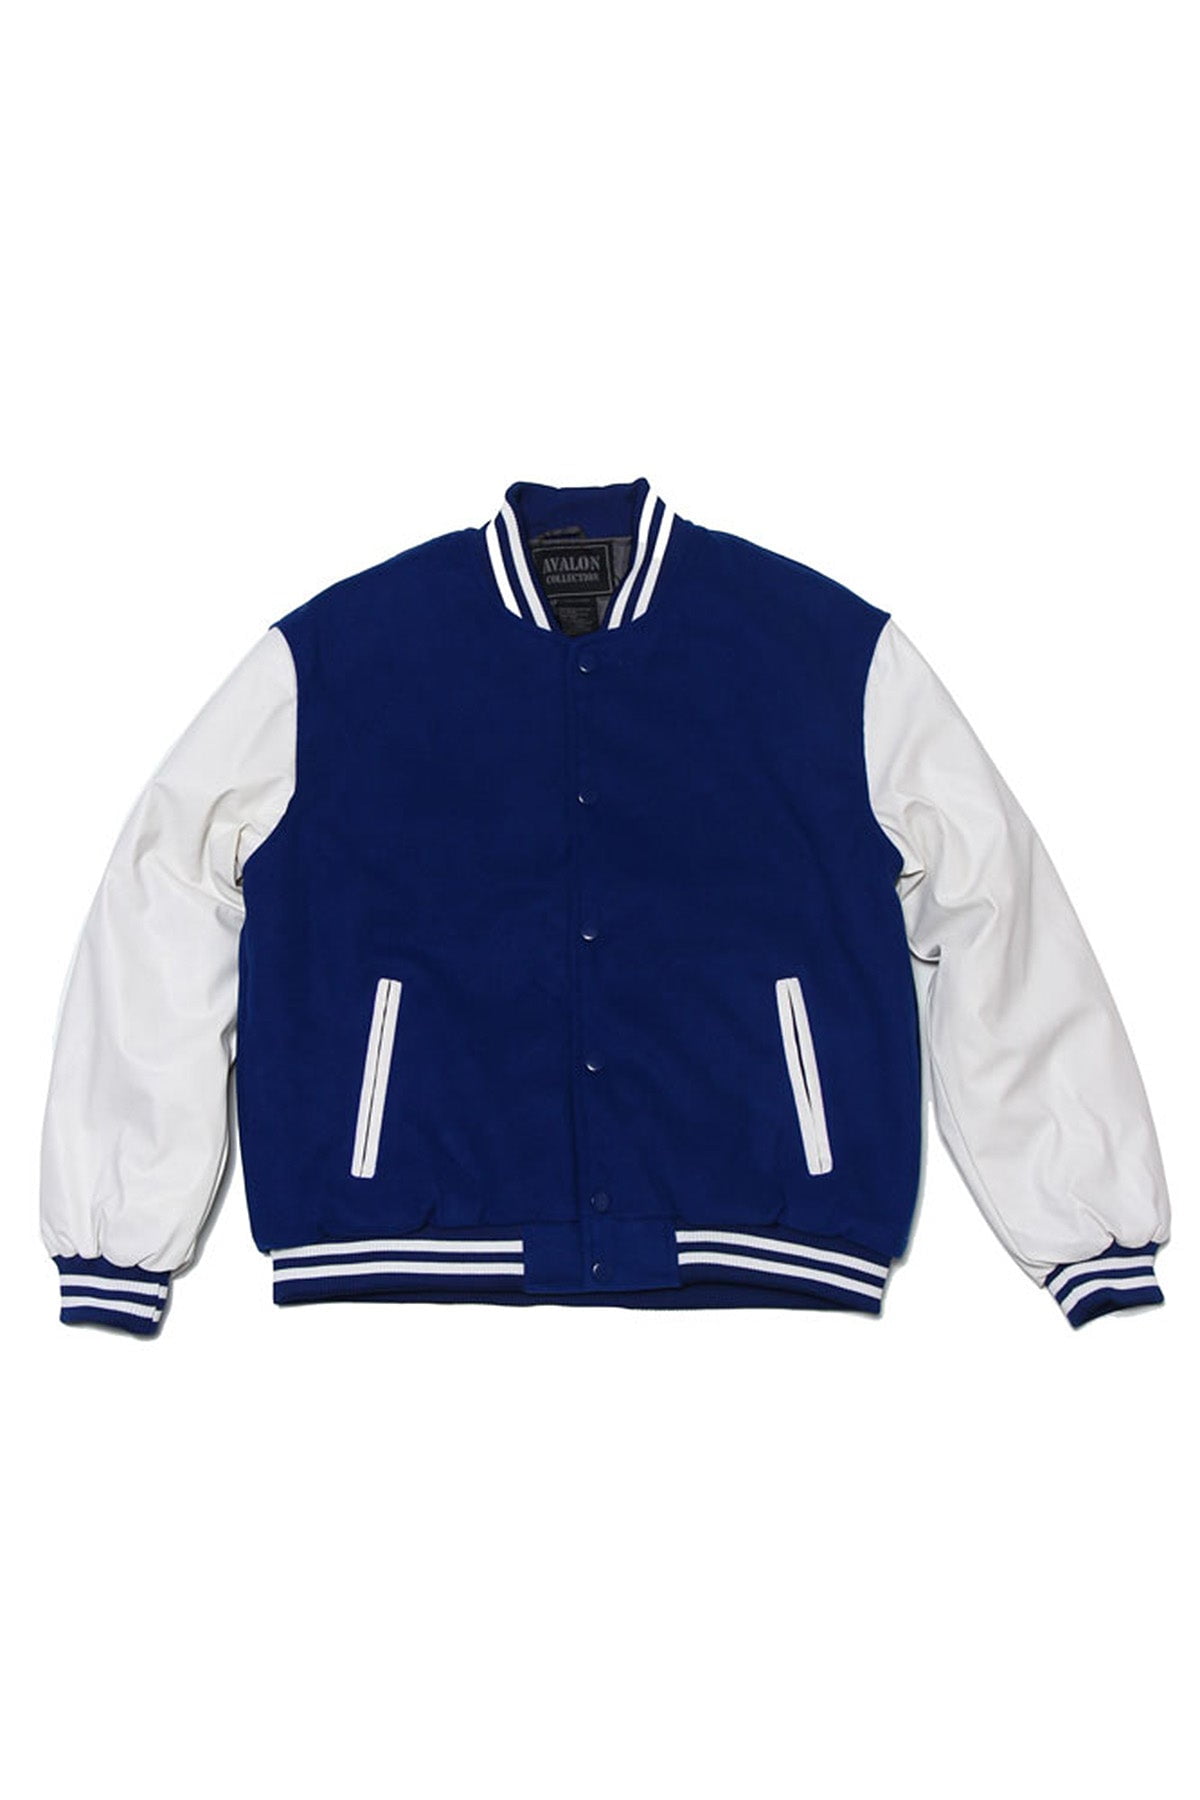 Blue & White Varsity Jacket, Blue & White Cotton Jacket